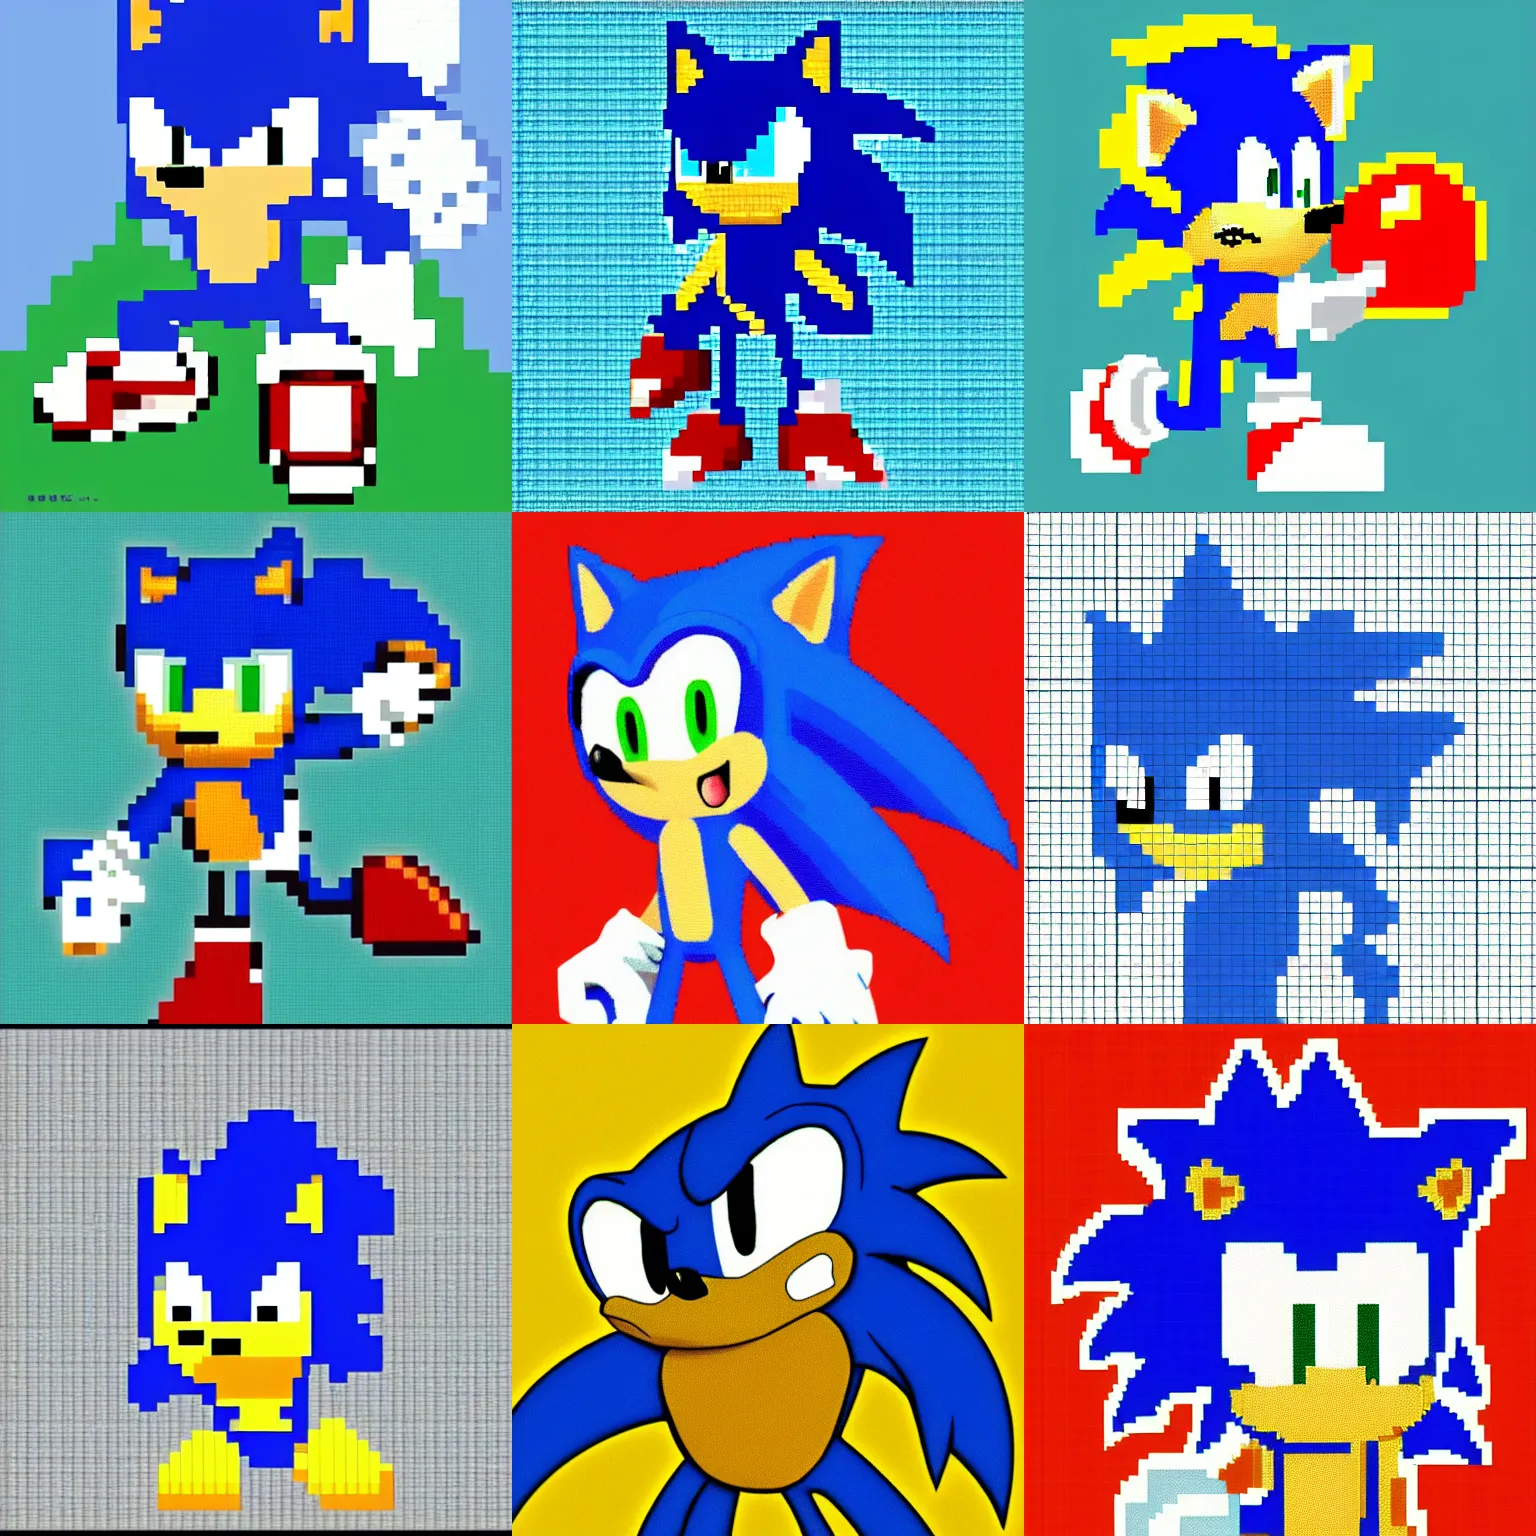 Prompt: pixel art of Sonic the Hedgehog